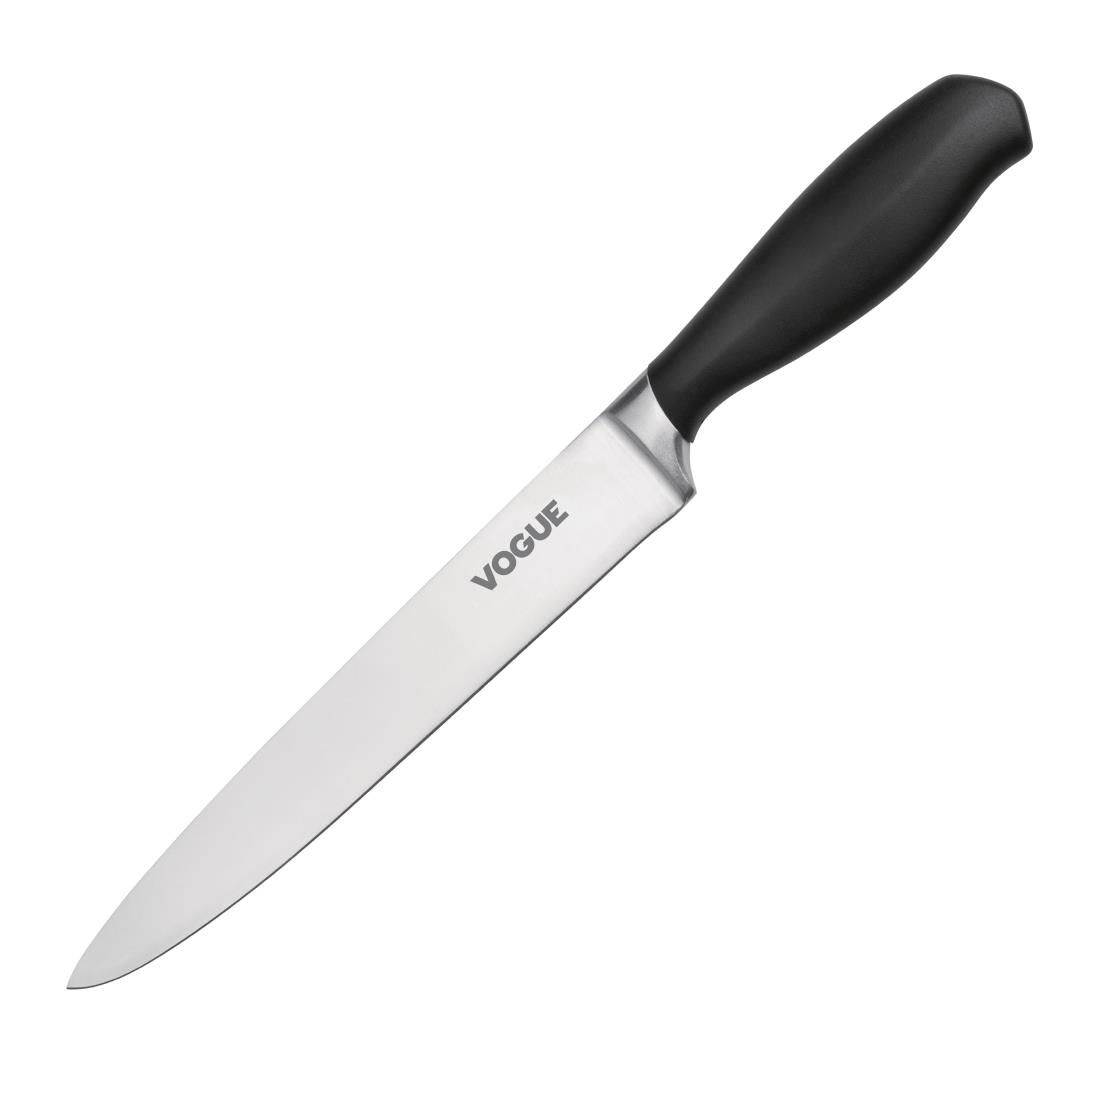 BLACK HANDLE SOFT GRIP CARVING KNIFE 8"GD758